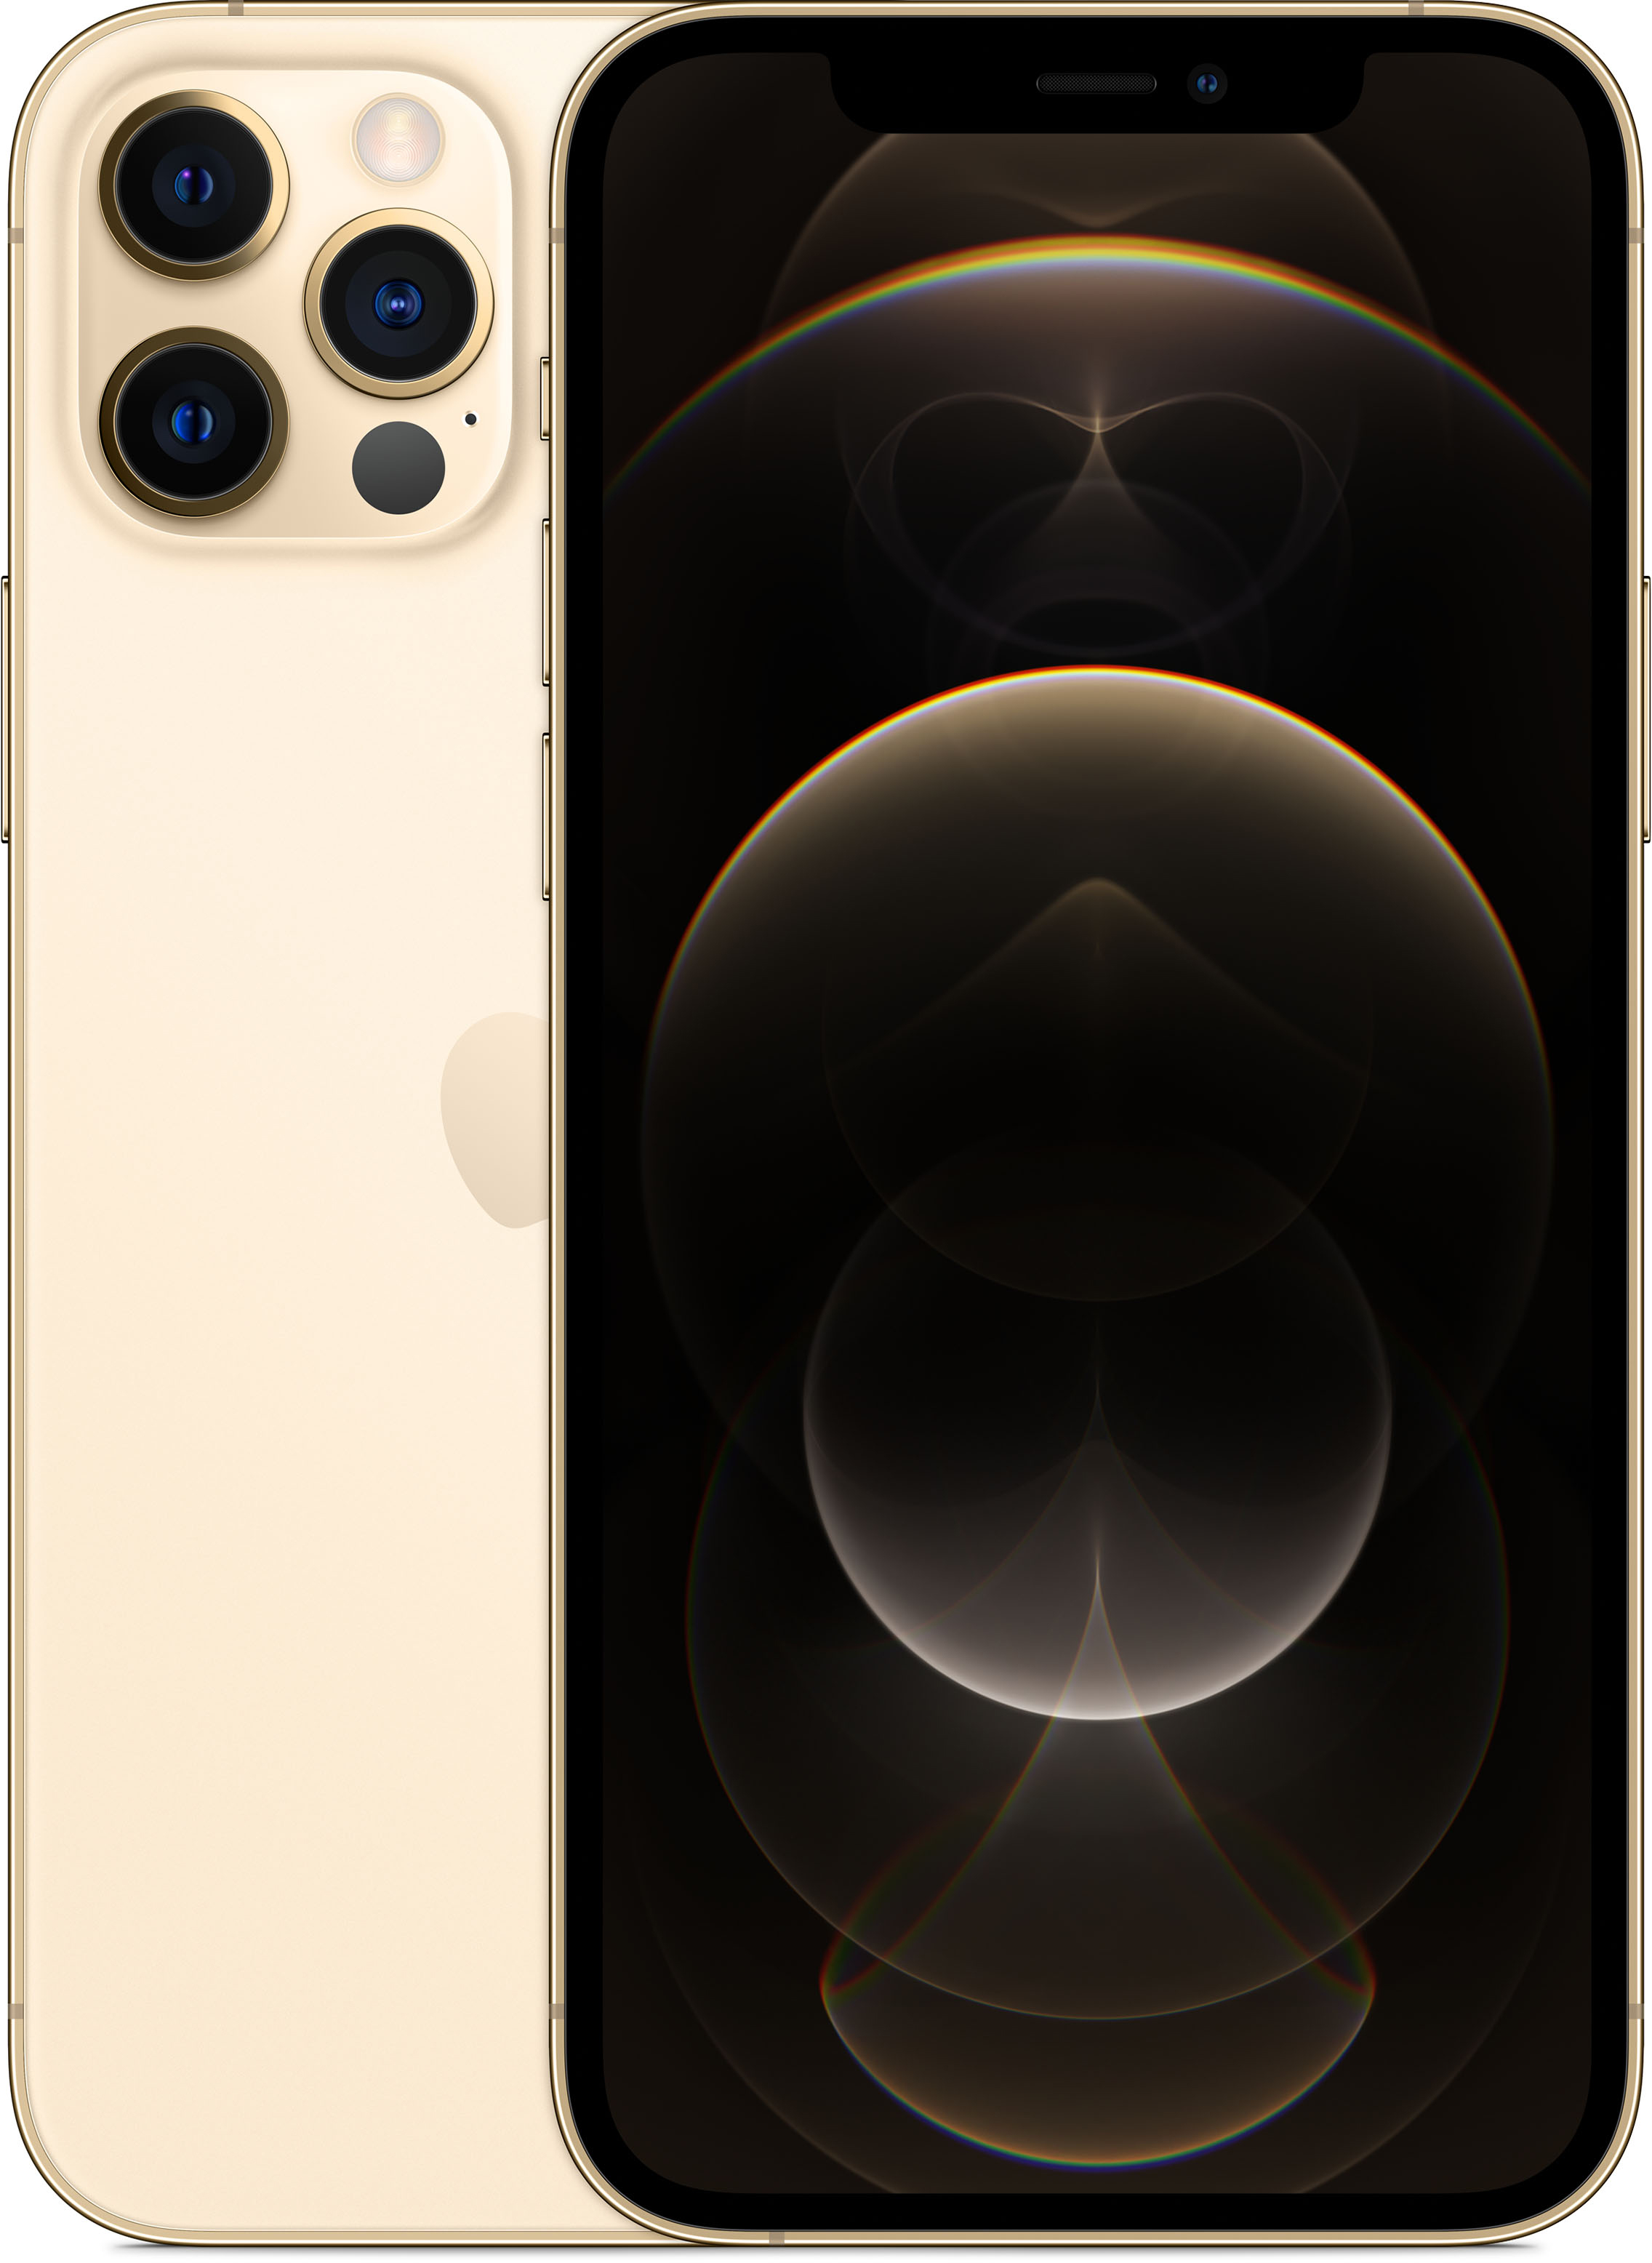 Apple iPhone 12 Pro 256GB (золотой)